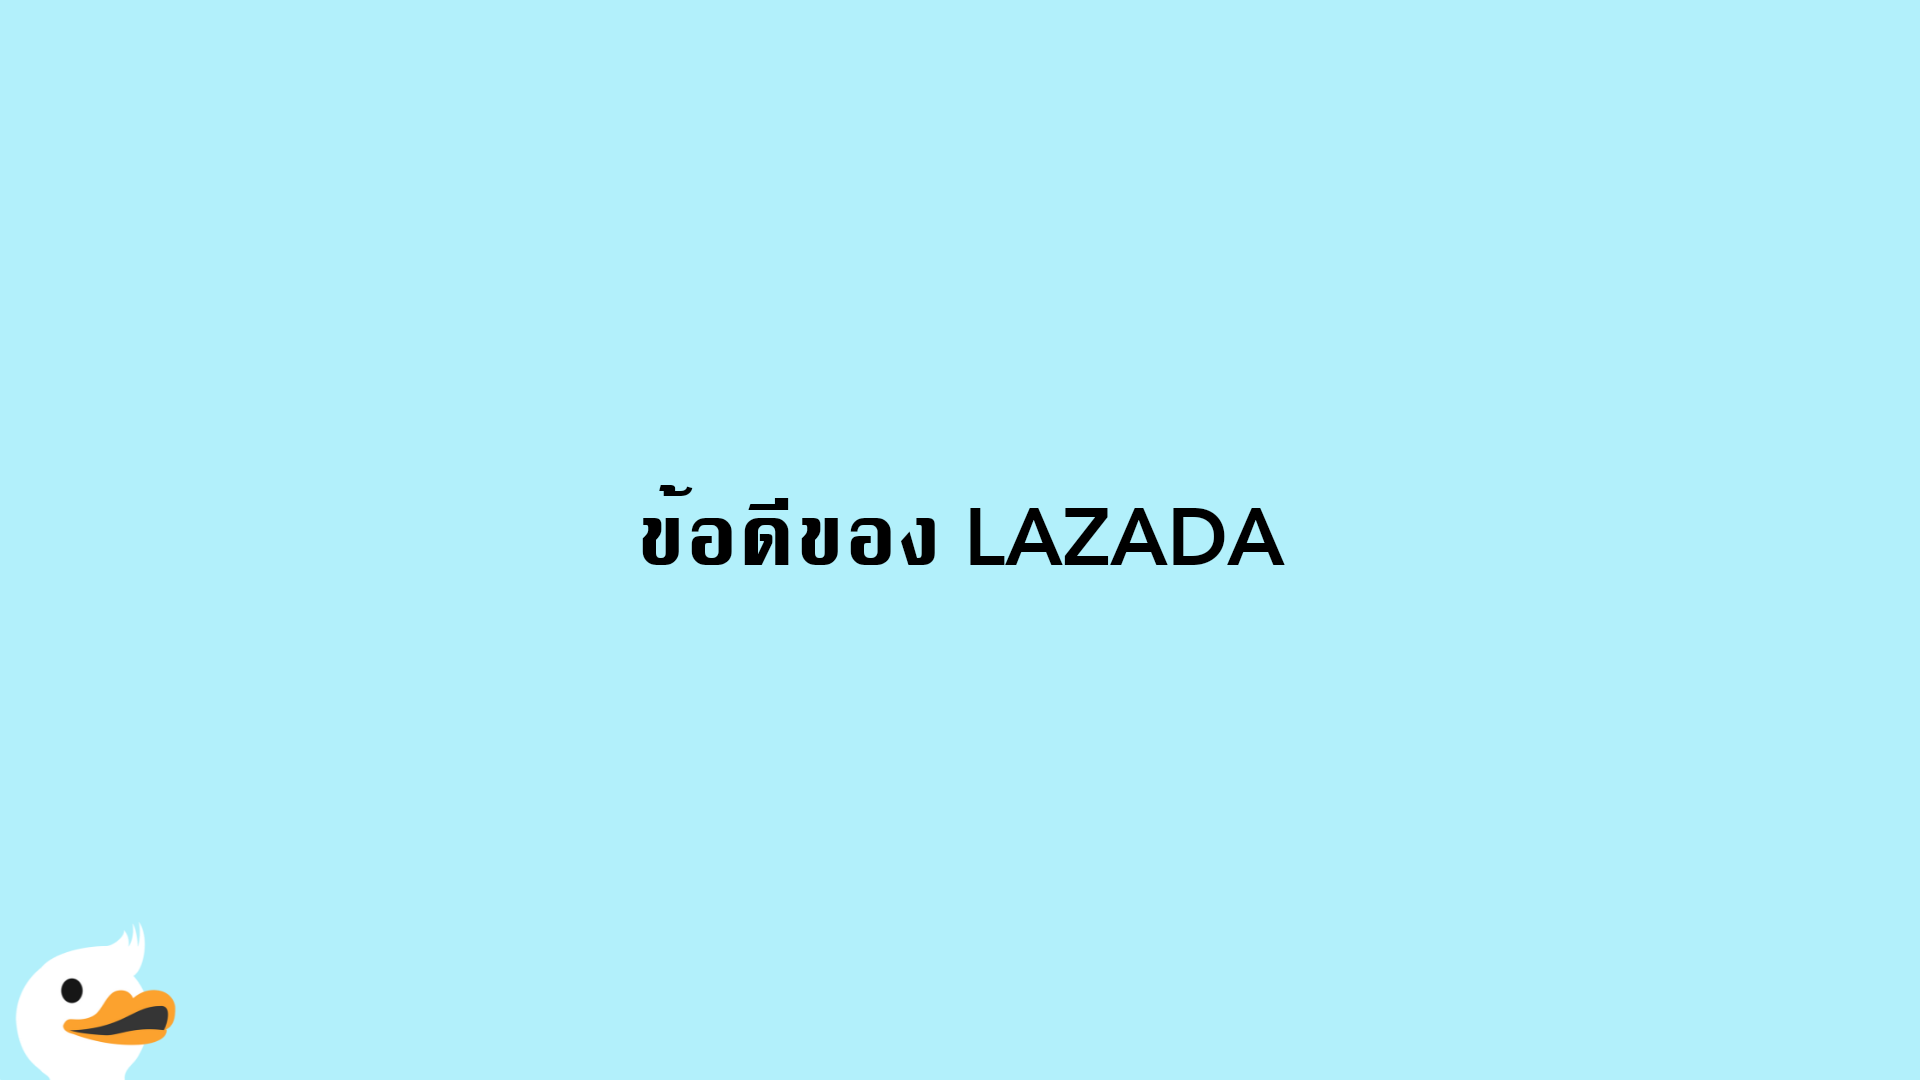 ข้อดีของ LAZADA